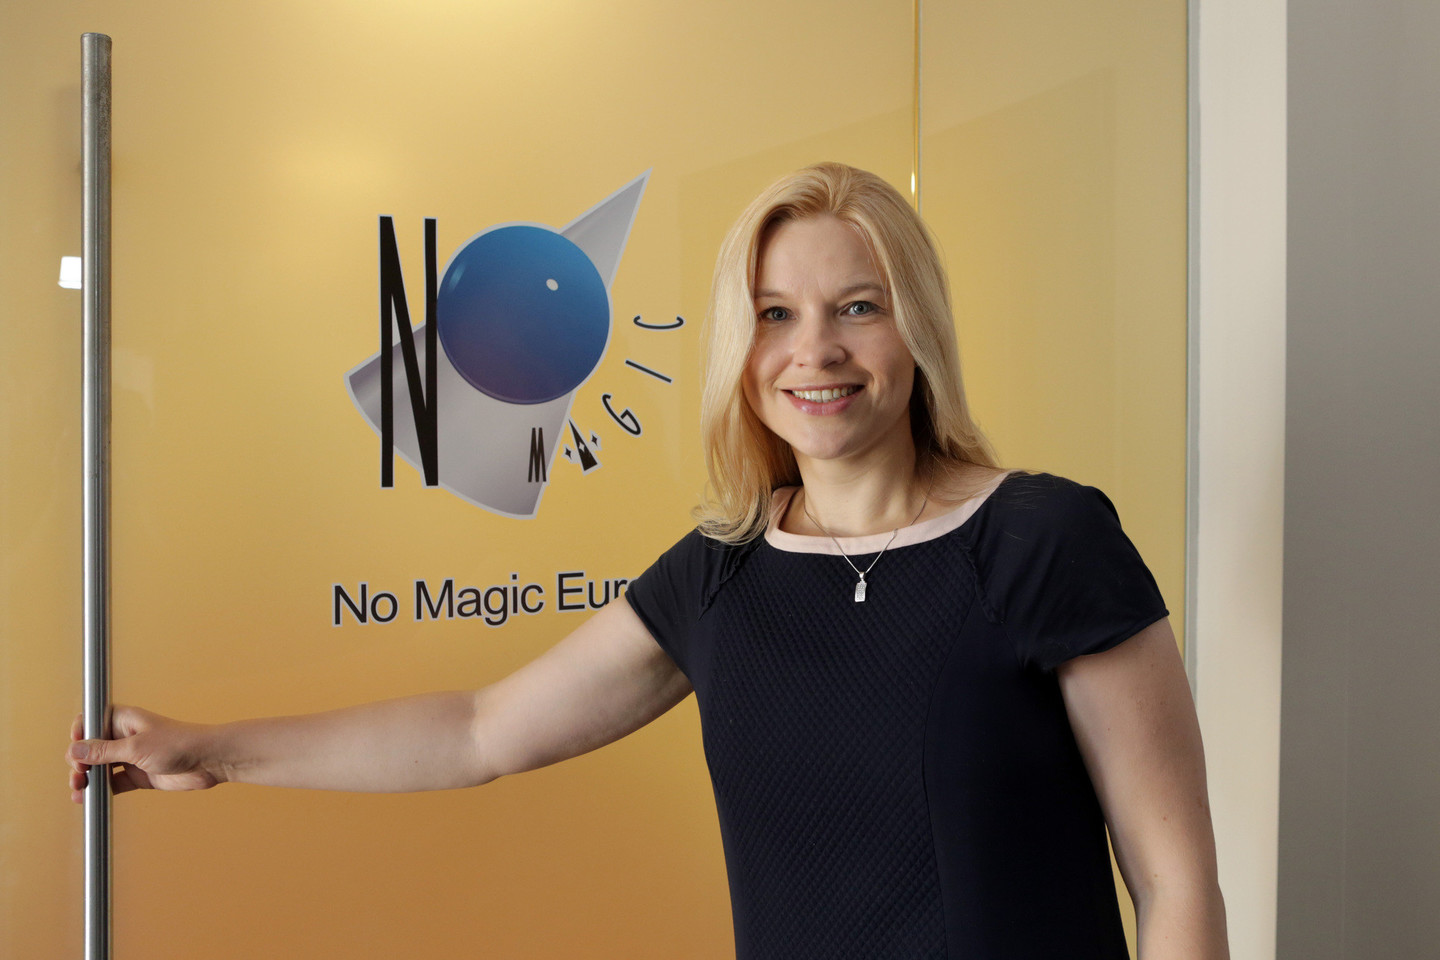 Tarptautinį lygį pasiekusios bendrovės „No Magic Europe“ vadovė G.Aklienė minėjo, jog surasti kvalifikuotų darbuotojų nėra paprasta.<br>P. Mantauto nuotr.